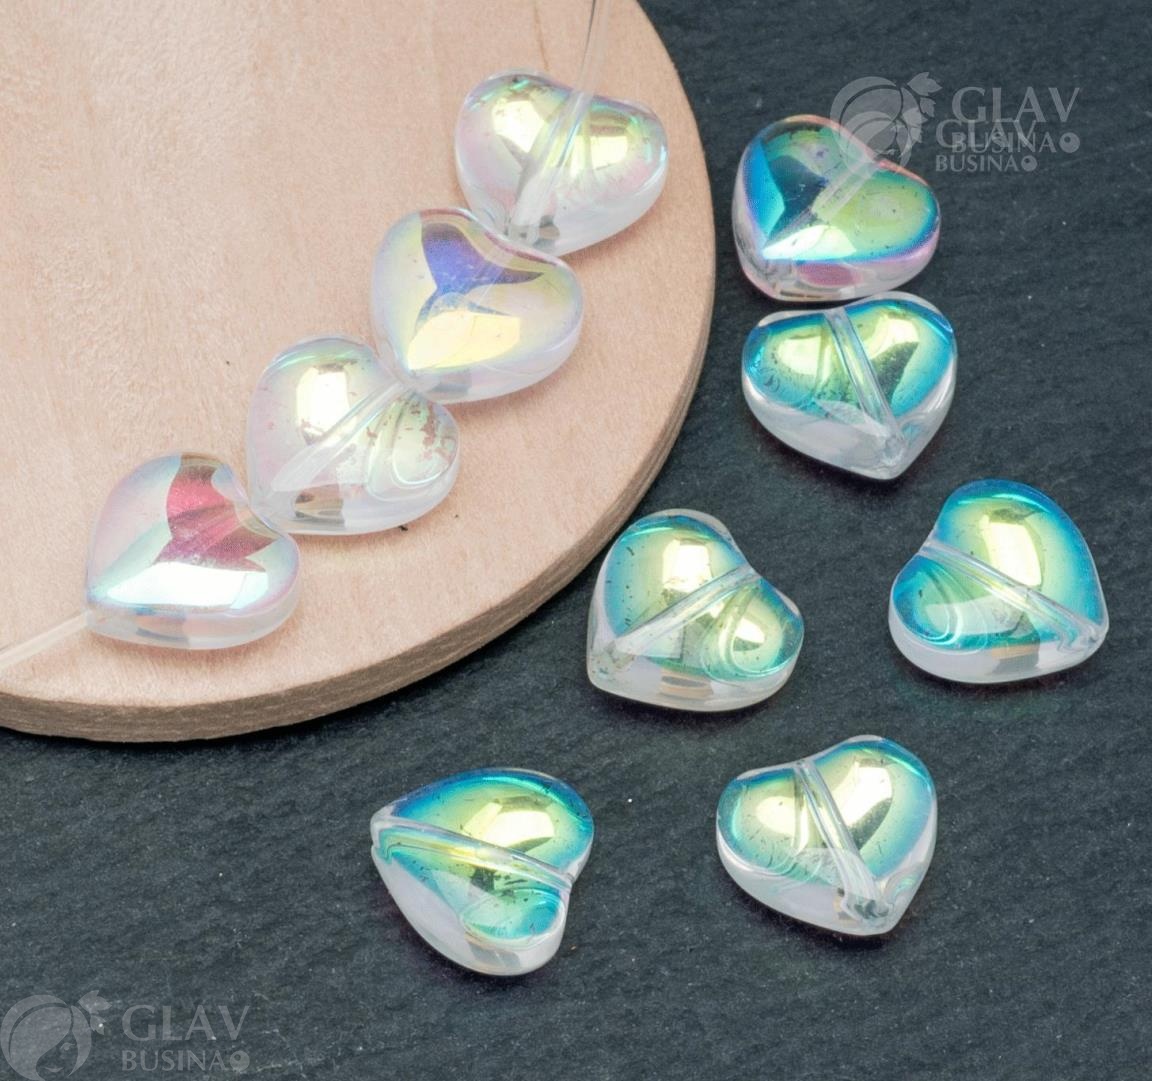 Бусины-сердечки из прозрачного стекла с АВ покрытием, размеры 10.5х11х5.7мм и отверстие 0.9мм. Имеют потертости на покрытии.